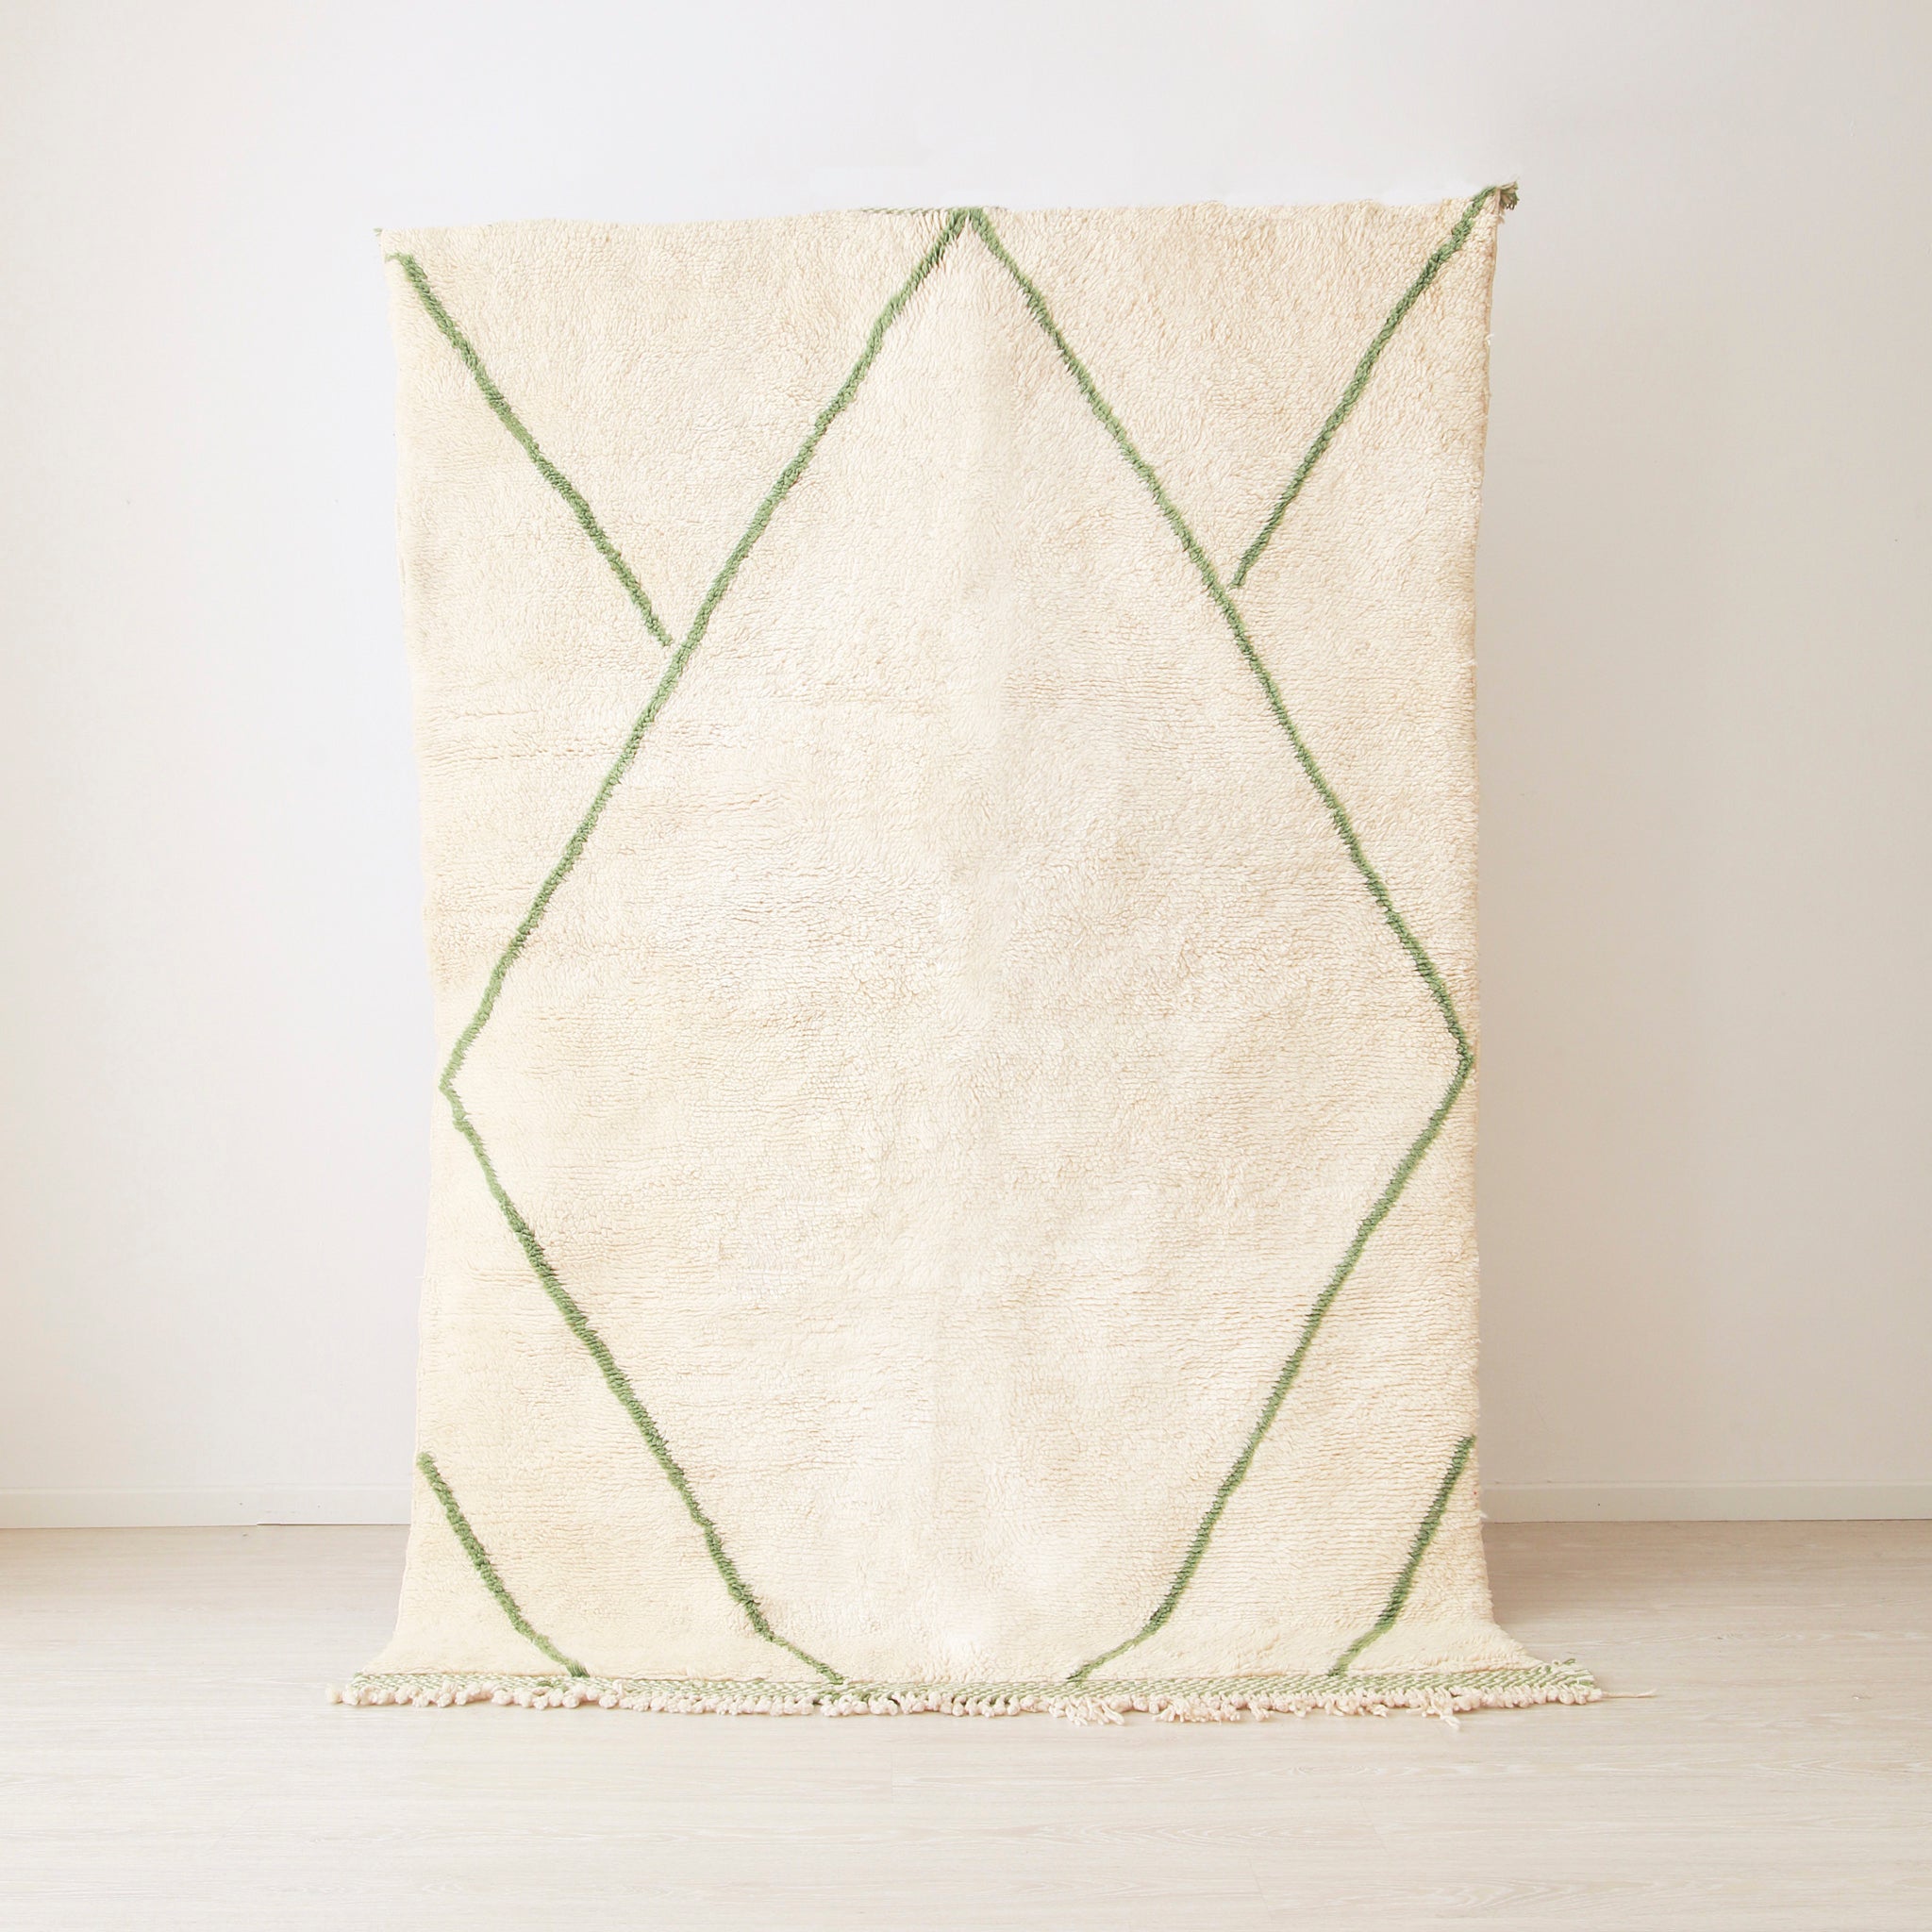 tappeto beni mrirt realizzato in lana bianca con linee verde. Le linee creano una grande rombo